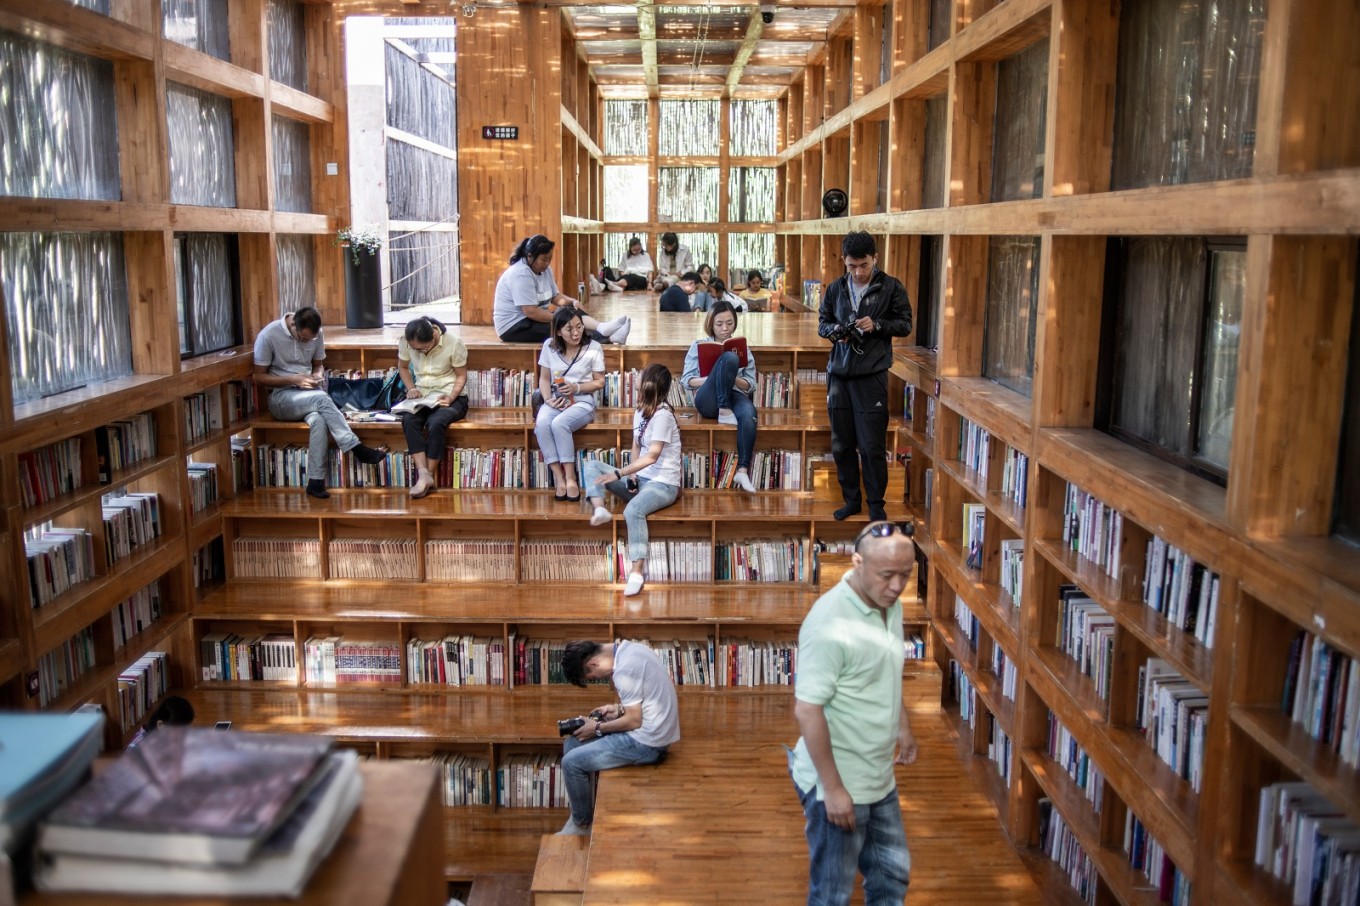 Библиотека Лиюань, Китай. Сельская библиотека Лиюань в КНР. Общественная библиотека Liyuan в Китае. Библиотека Хуайжоу. Bookworm library